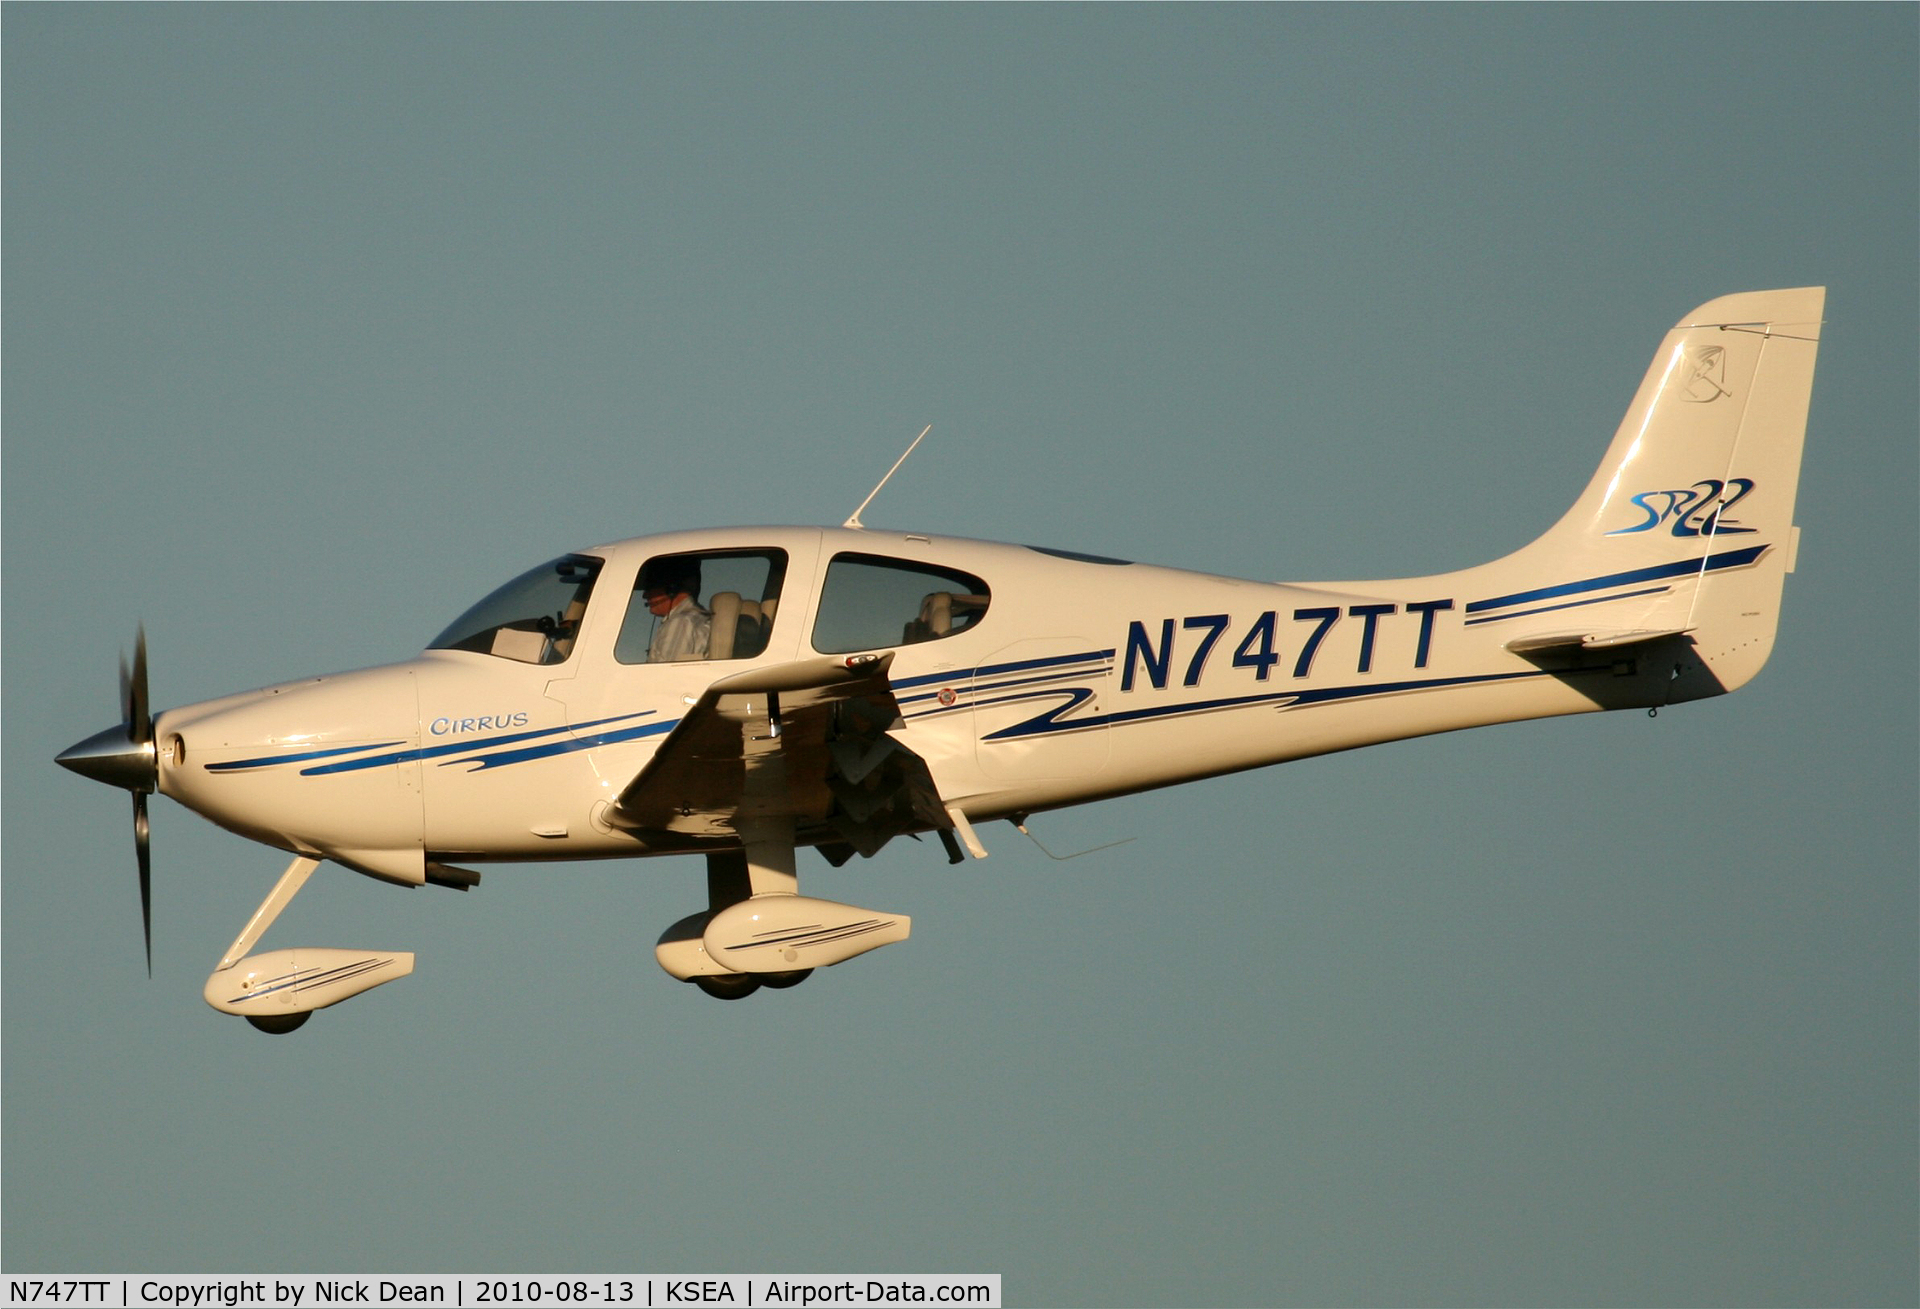 N747TT, 2003 Cirrus SR22 C/N 0481, KSEA